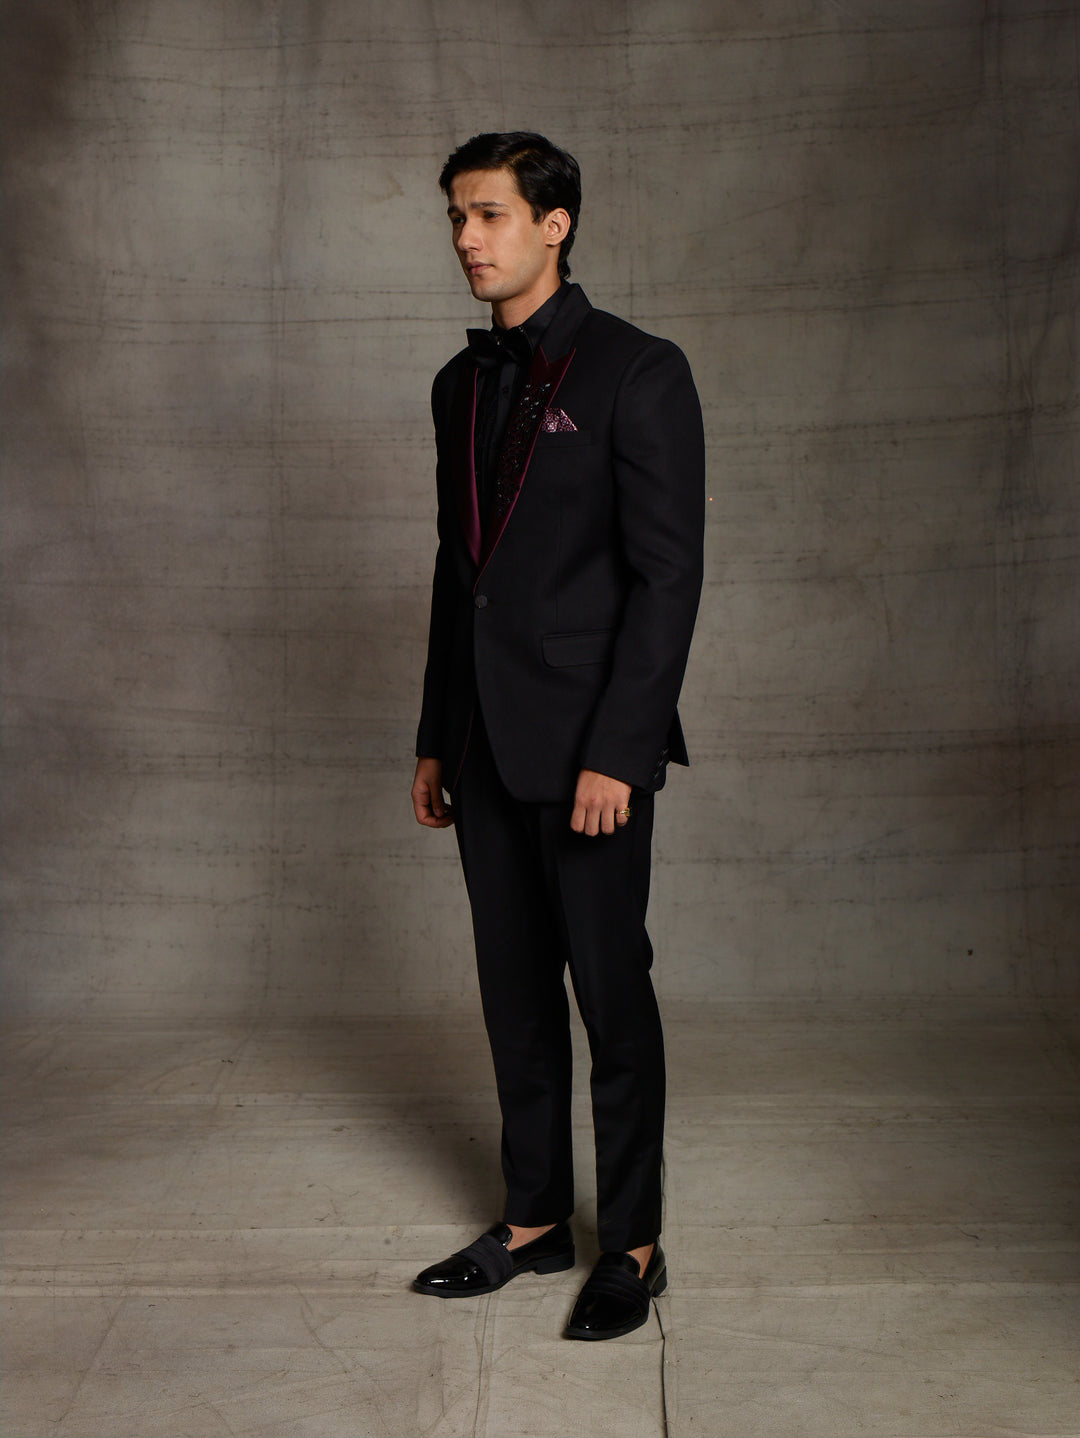 Black suit with contrast lapel